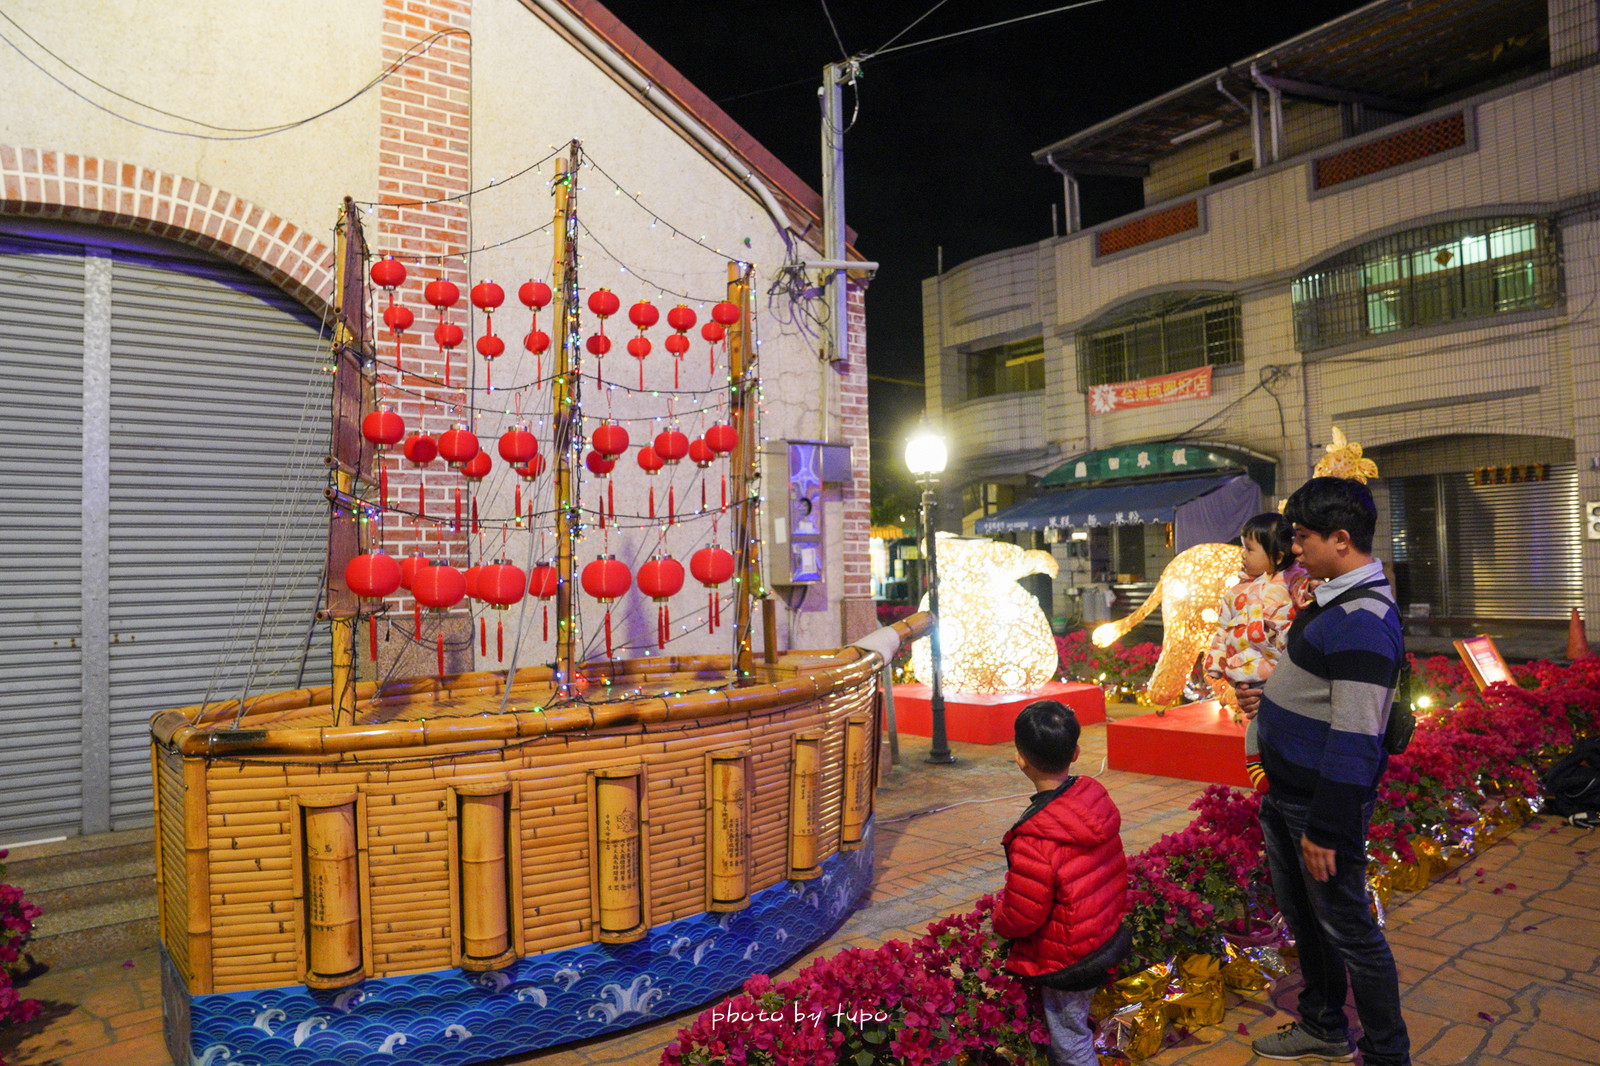 南投竹山》竹山燈會就醬玩～2021竹山牛舞花竹藝燈會，全國最長展出竹子主題燈會，不繞路五個景點懶人包。